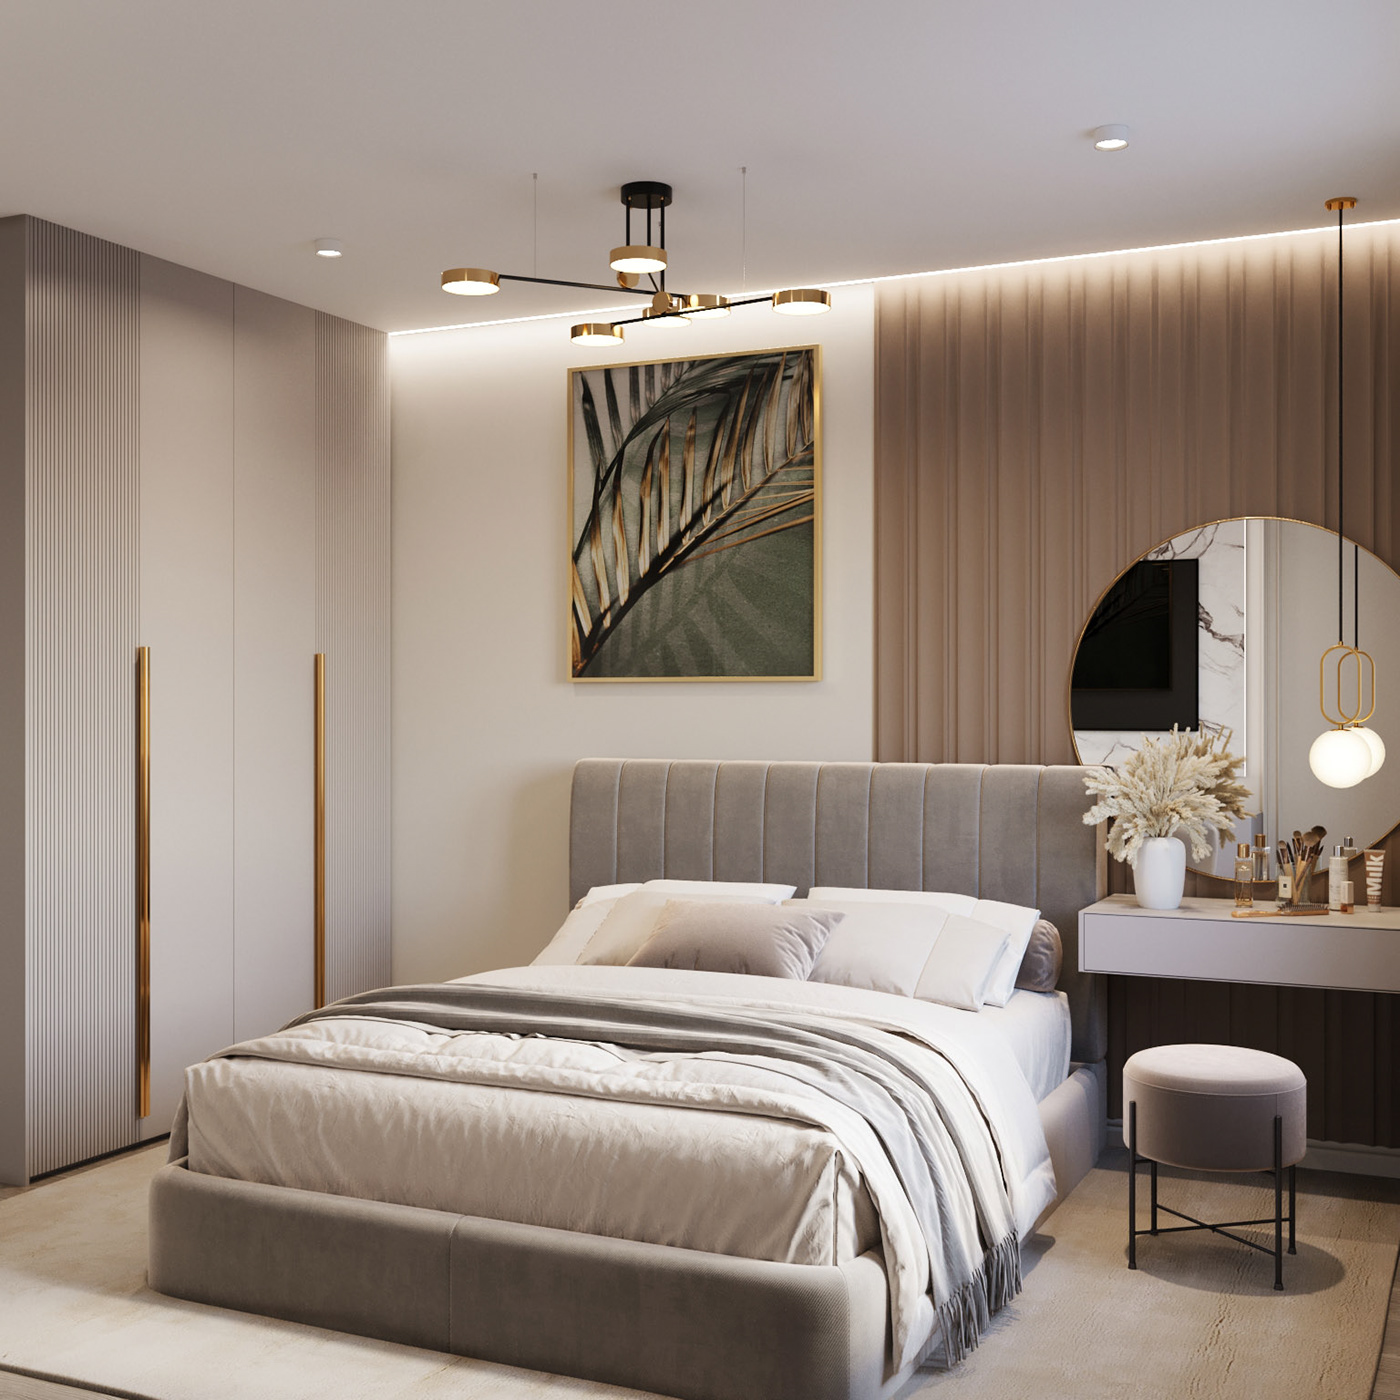 визуализация дизайн интерьера интерьер дизайн спальня visualization 3ds max interior design 